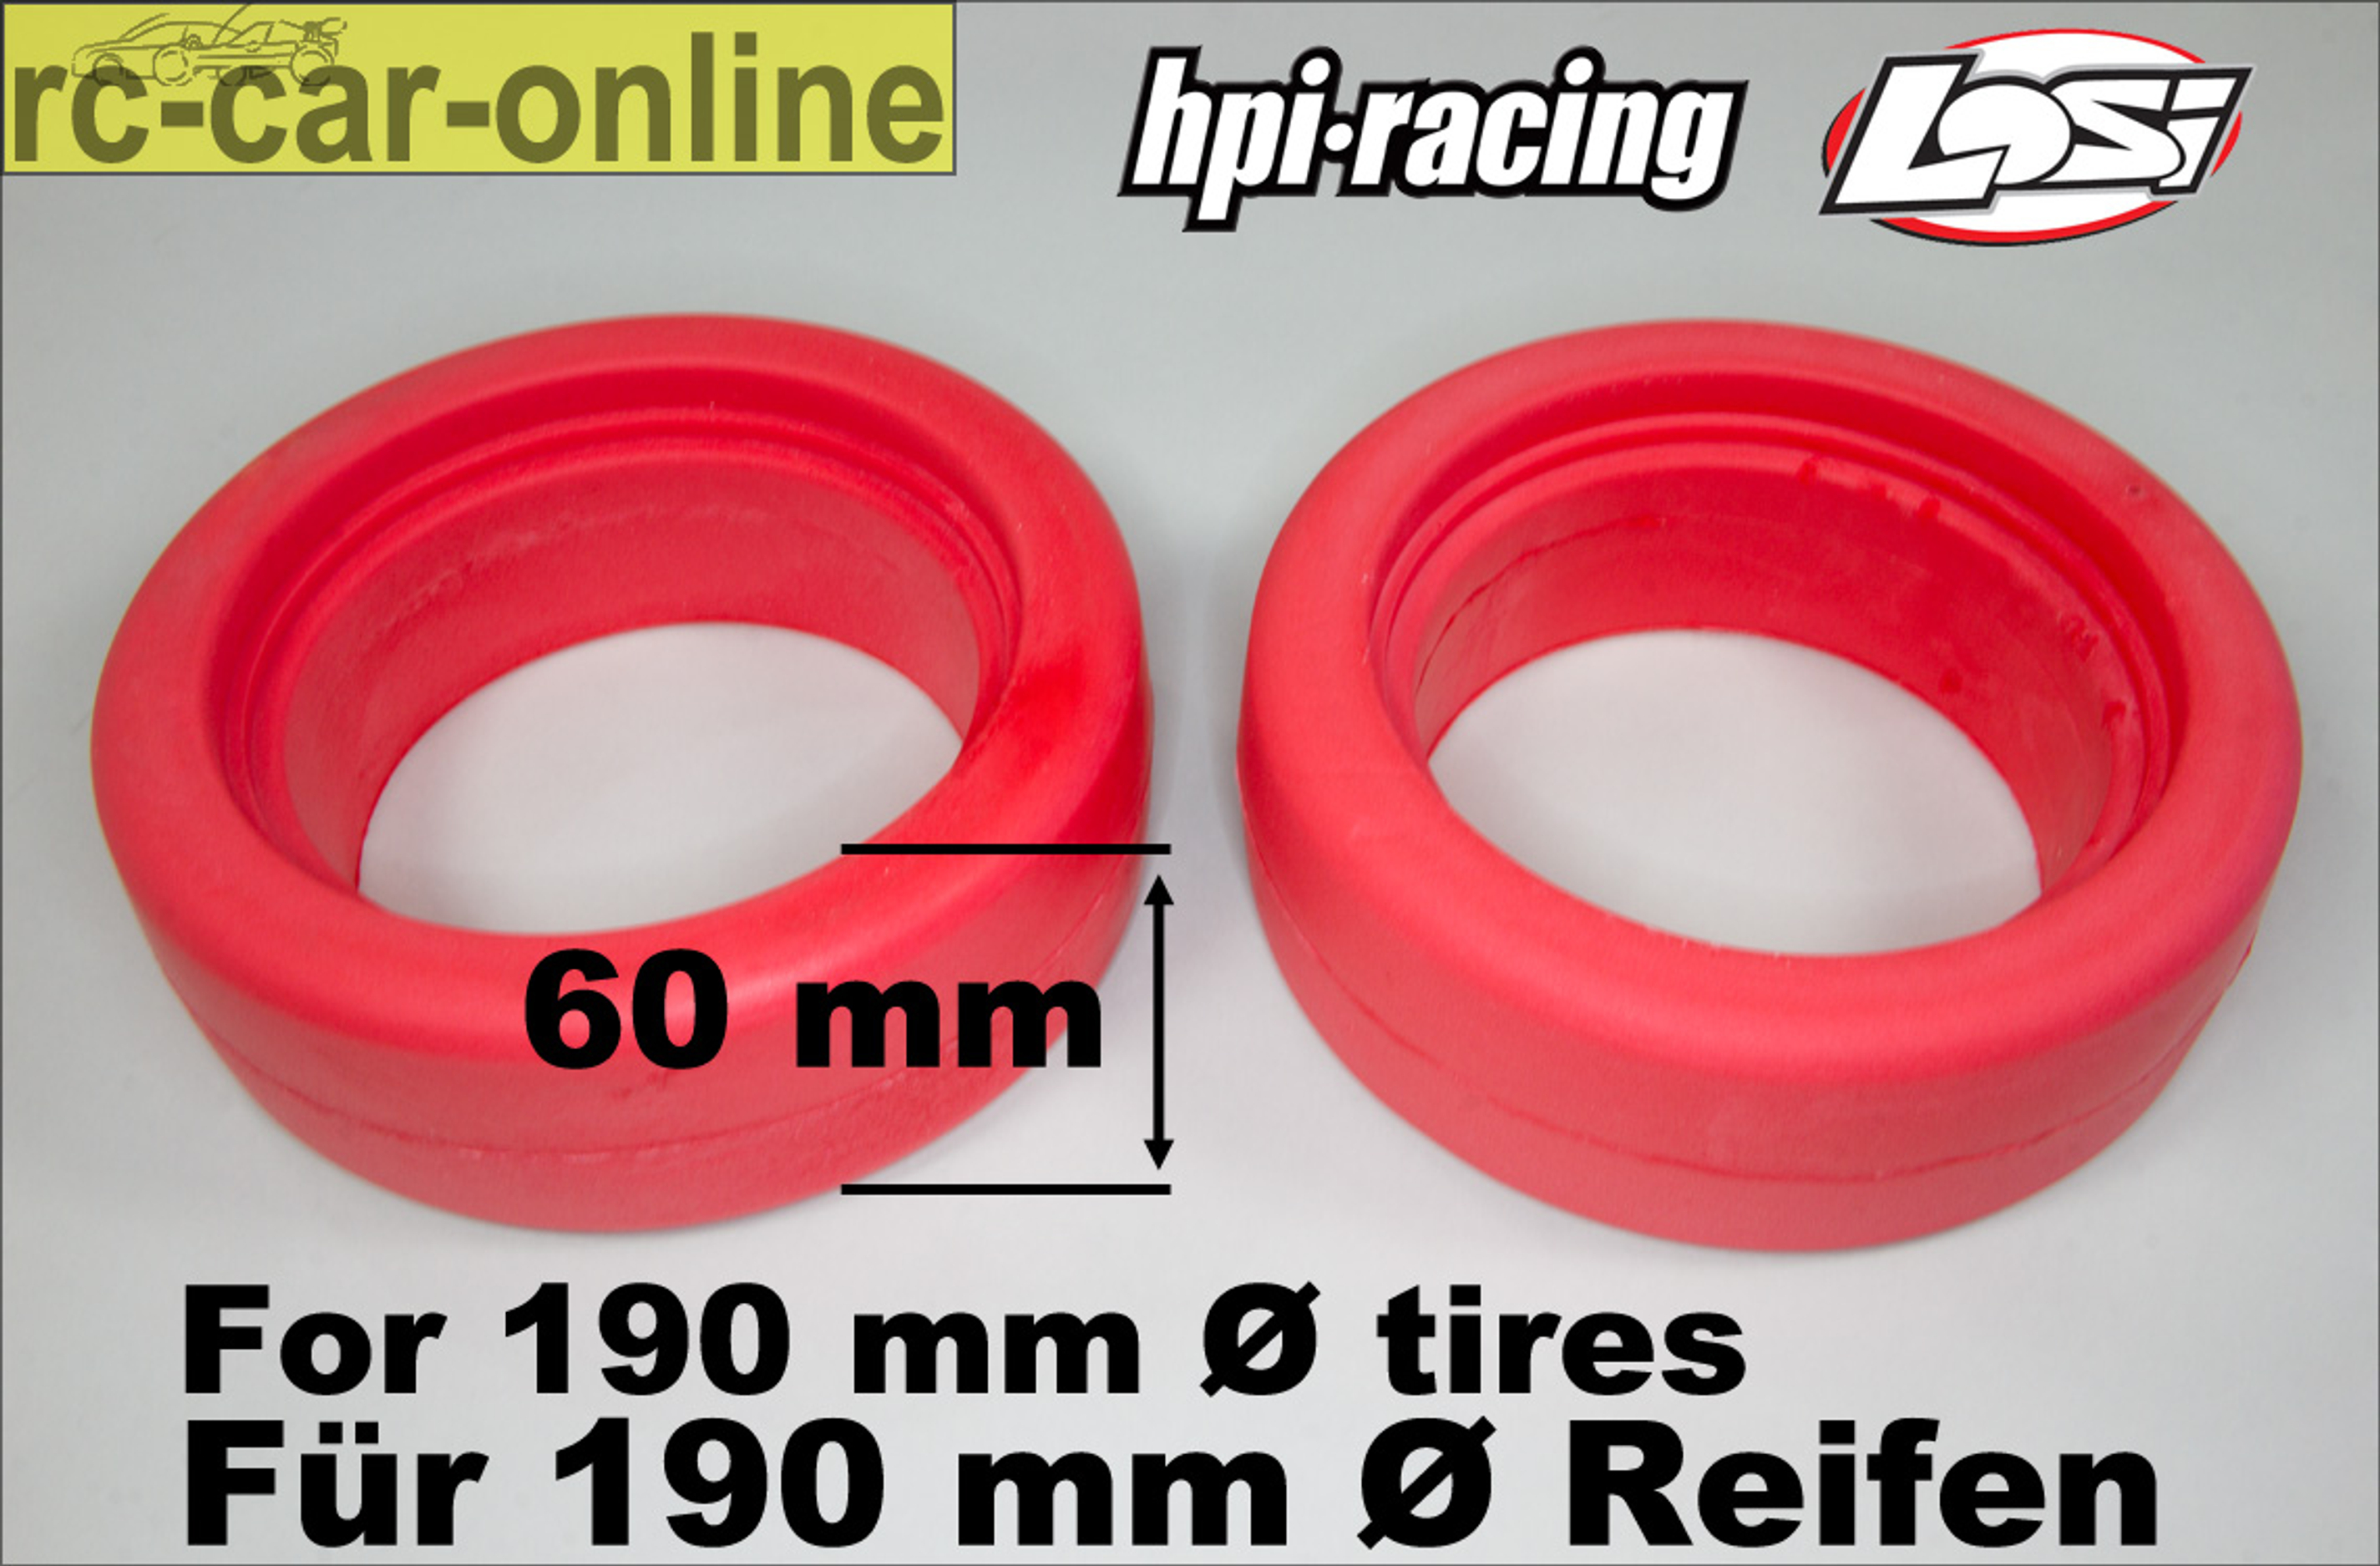 y1322 Speziell geformte Reifeneinlagen für 190 mm  Ø HPI + Losi - Reifen in 60 mm Breite